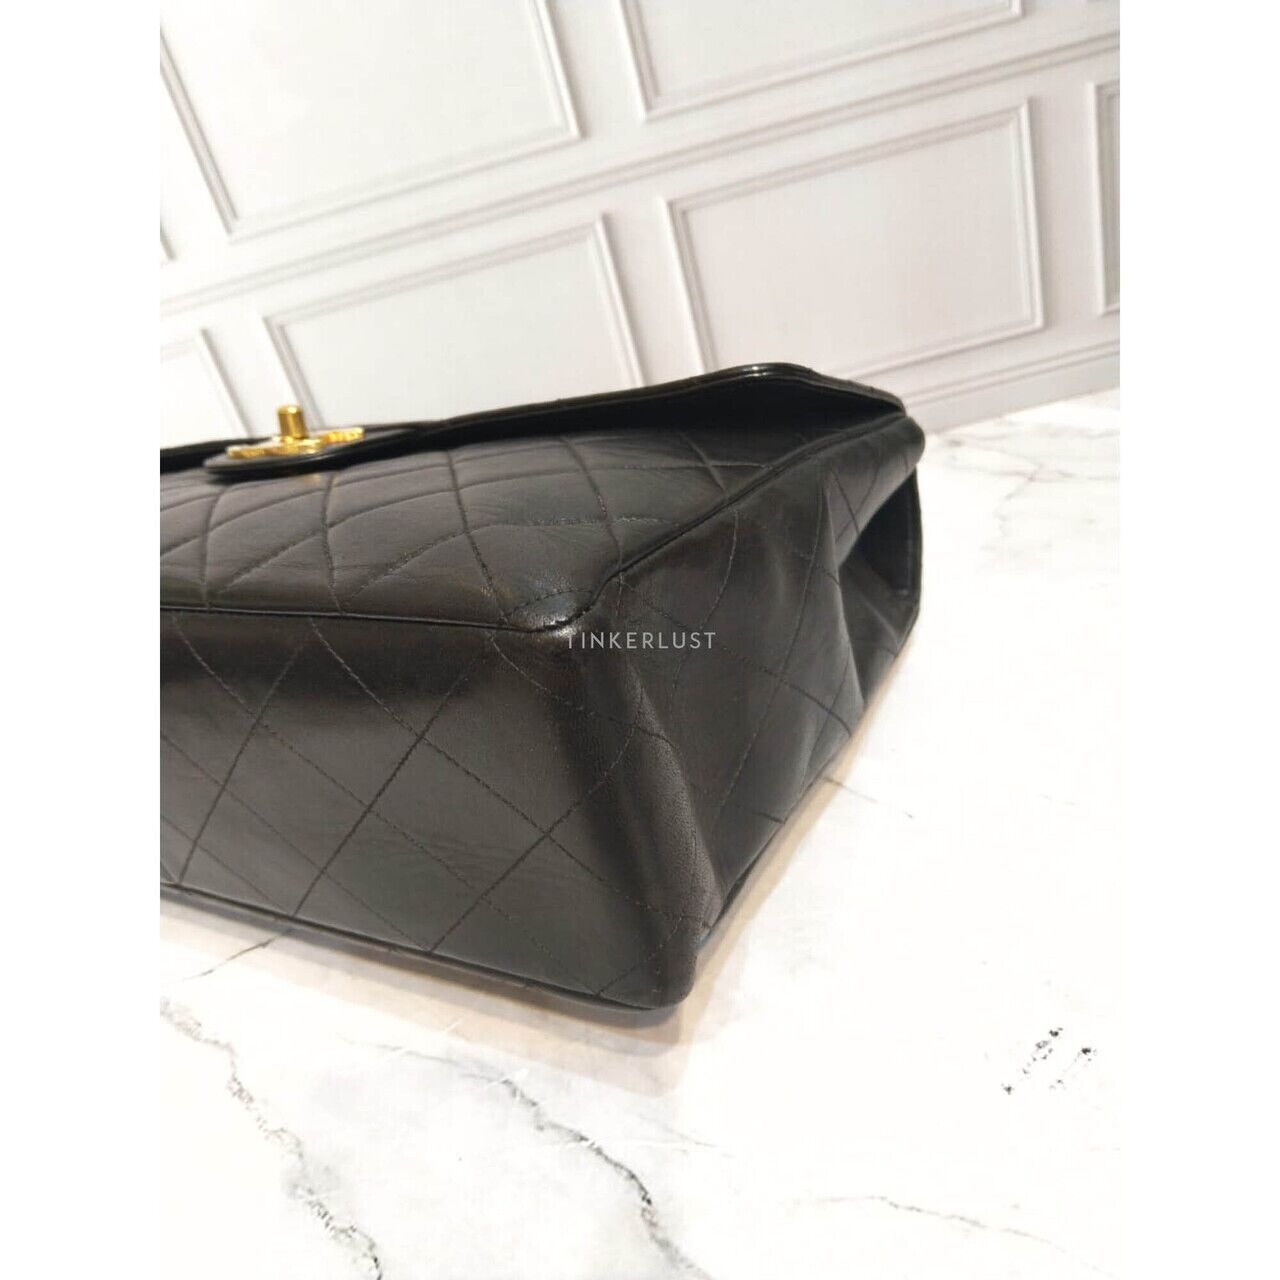 Chanel Vintage Maxi Black Lambskin #4 GHW Shoulder Bag